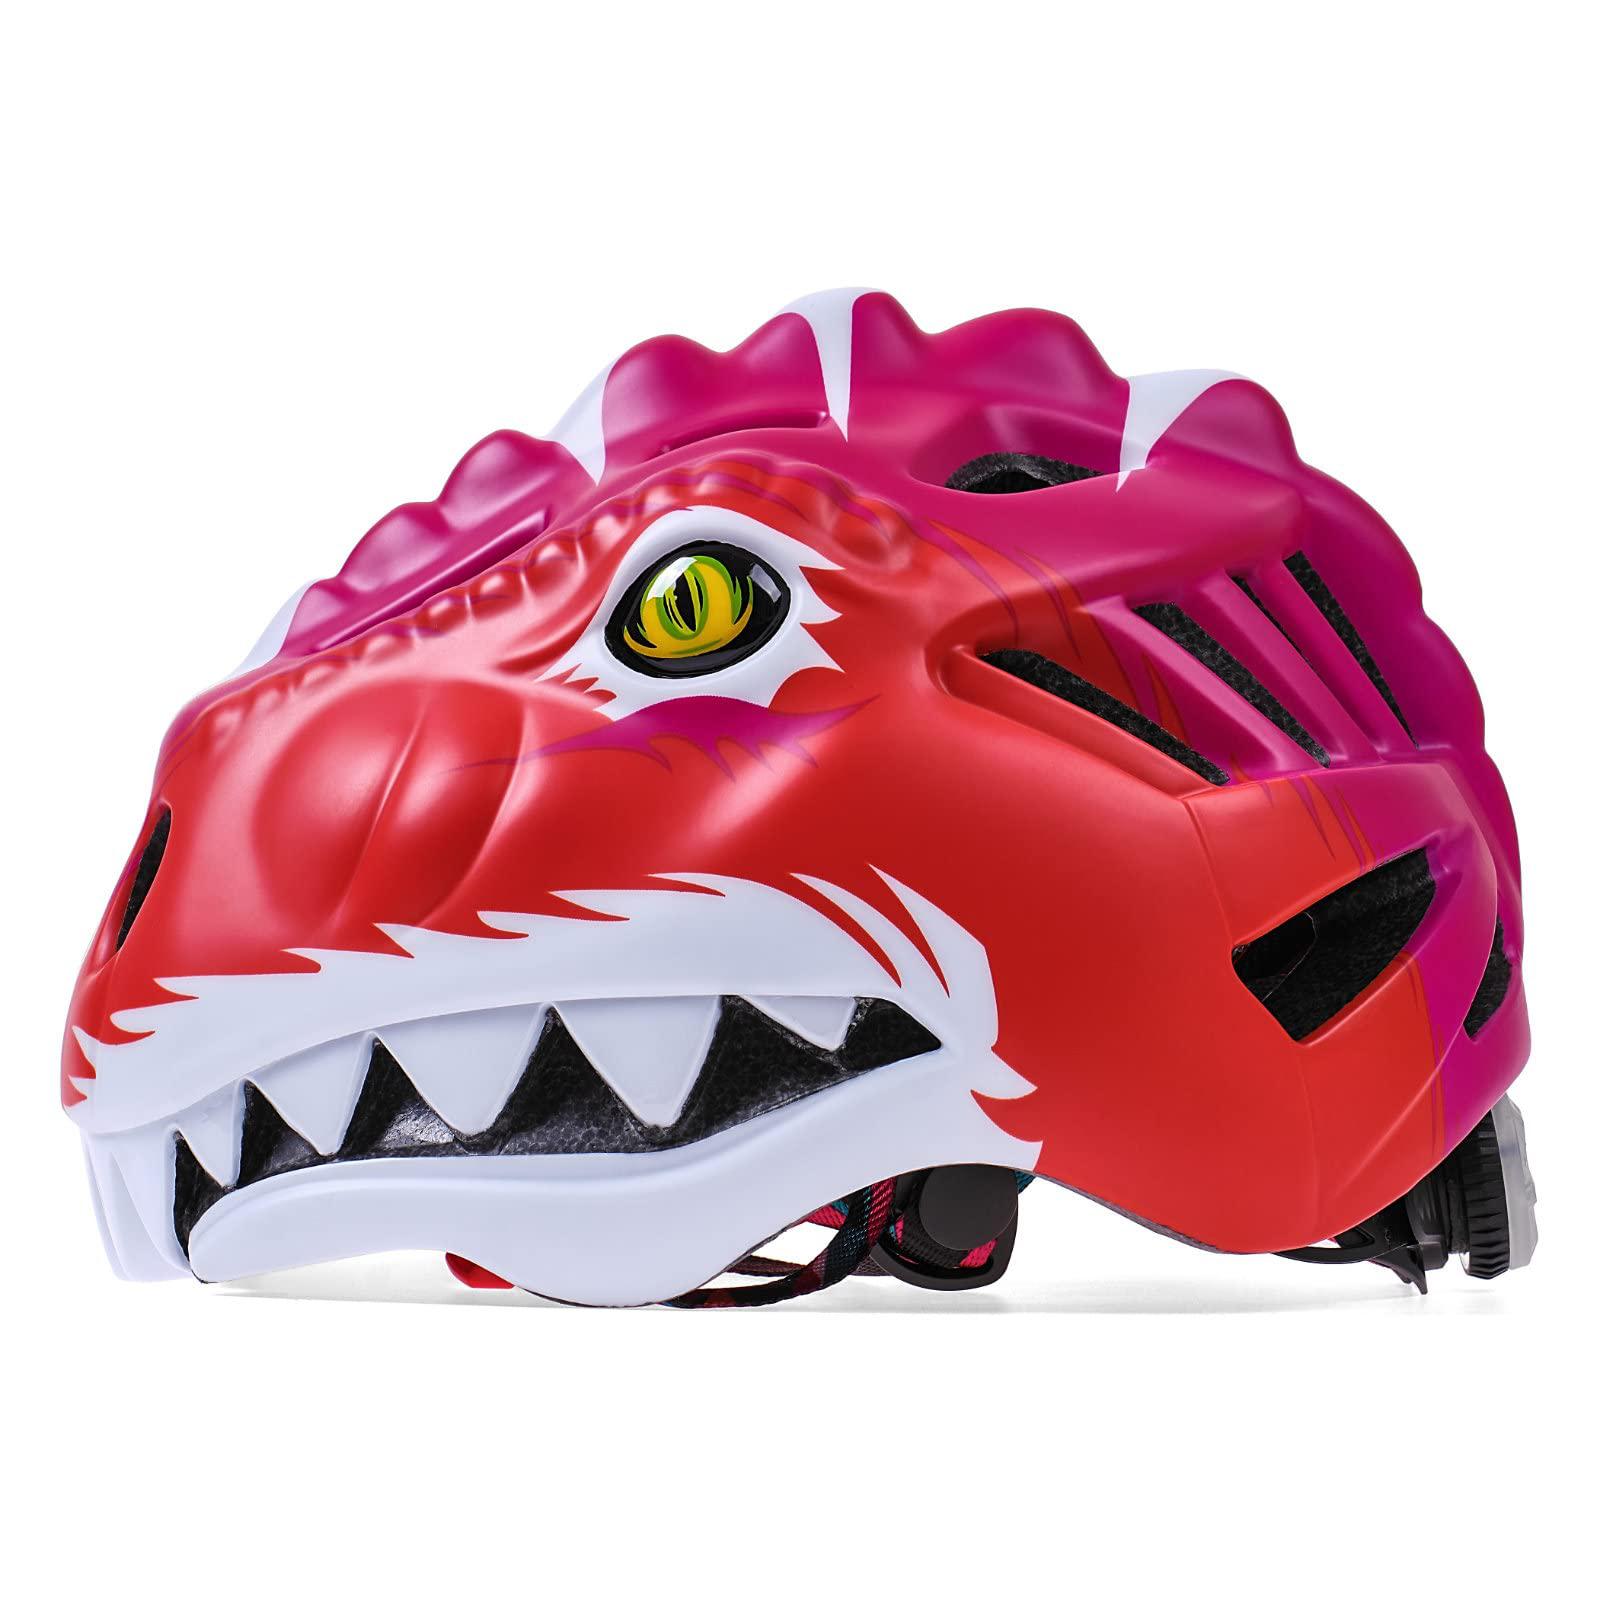 kingbike toddler bike helmet,kids helmet for skateboard cycling skate roller w/colorfull led light